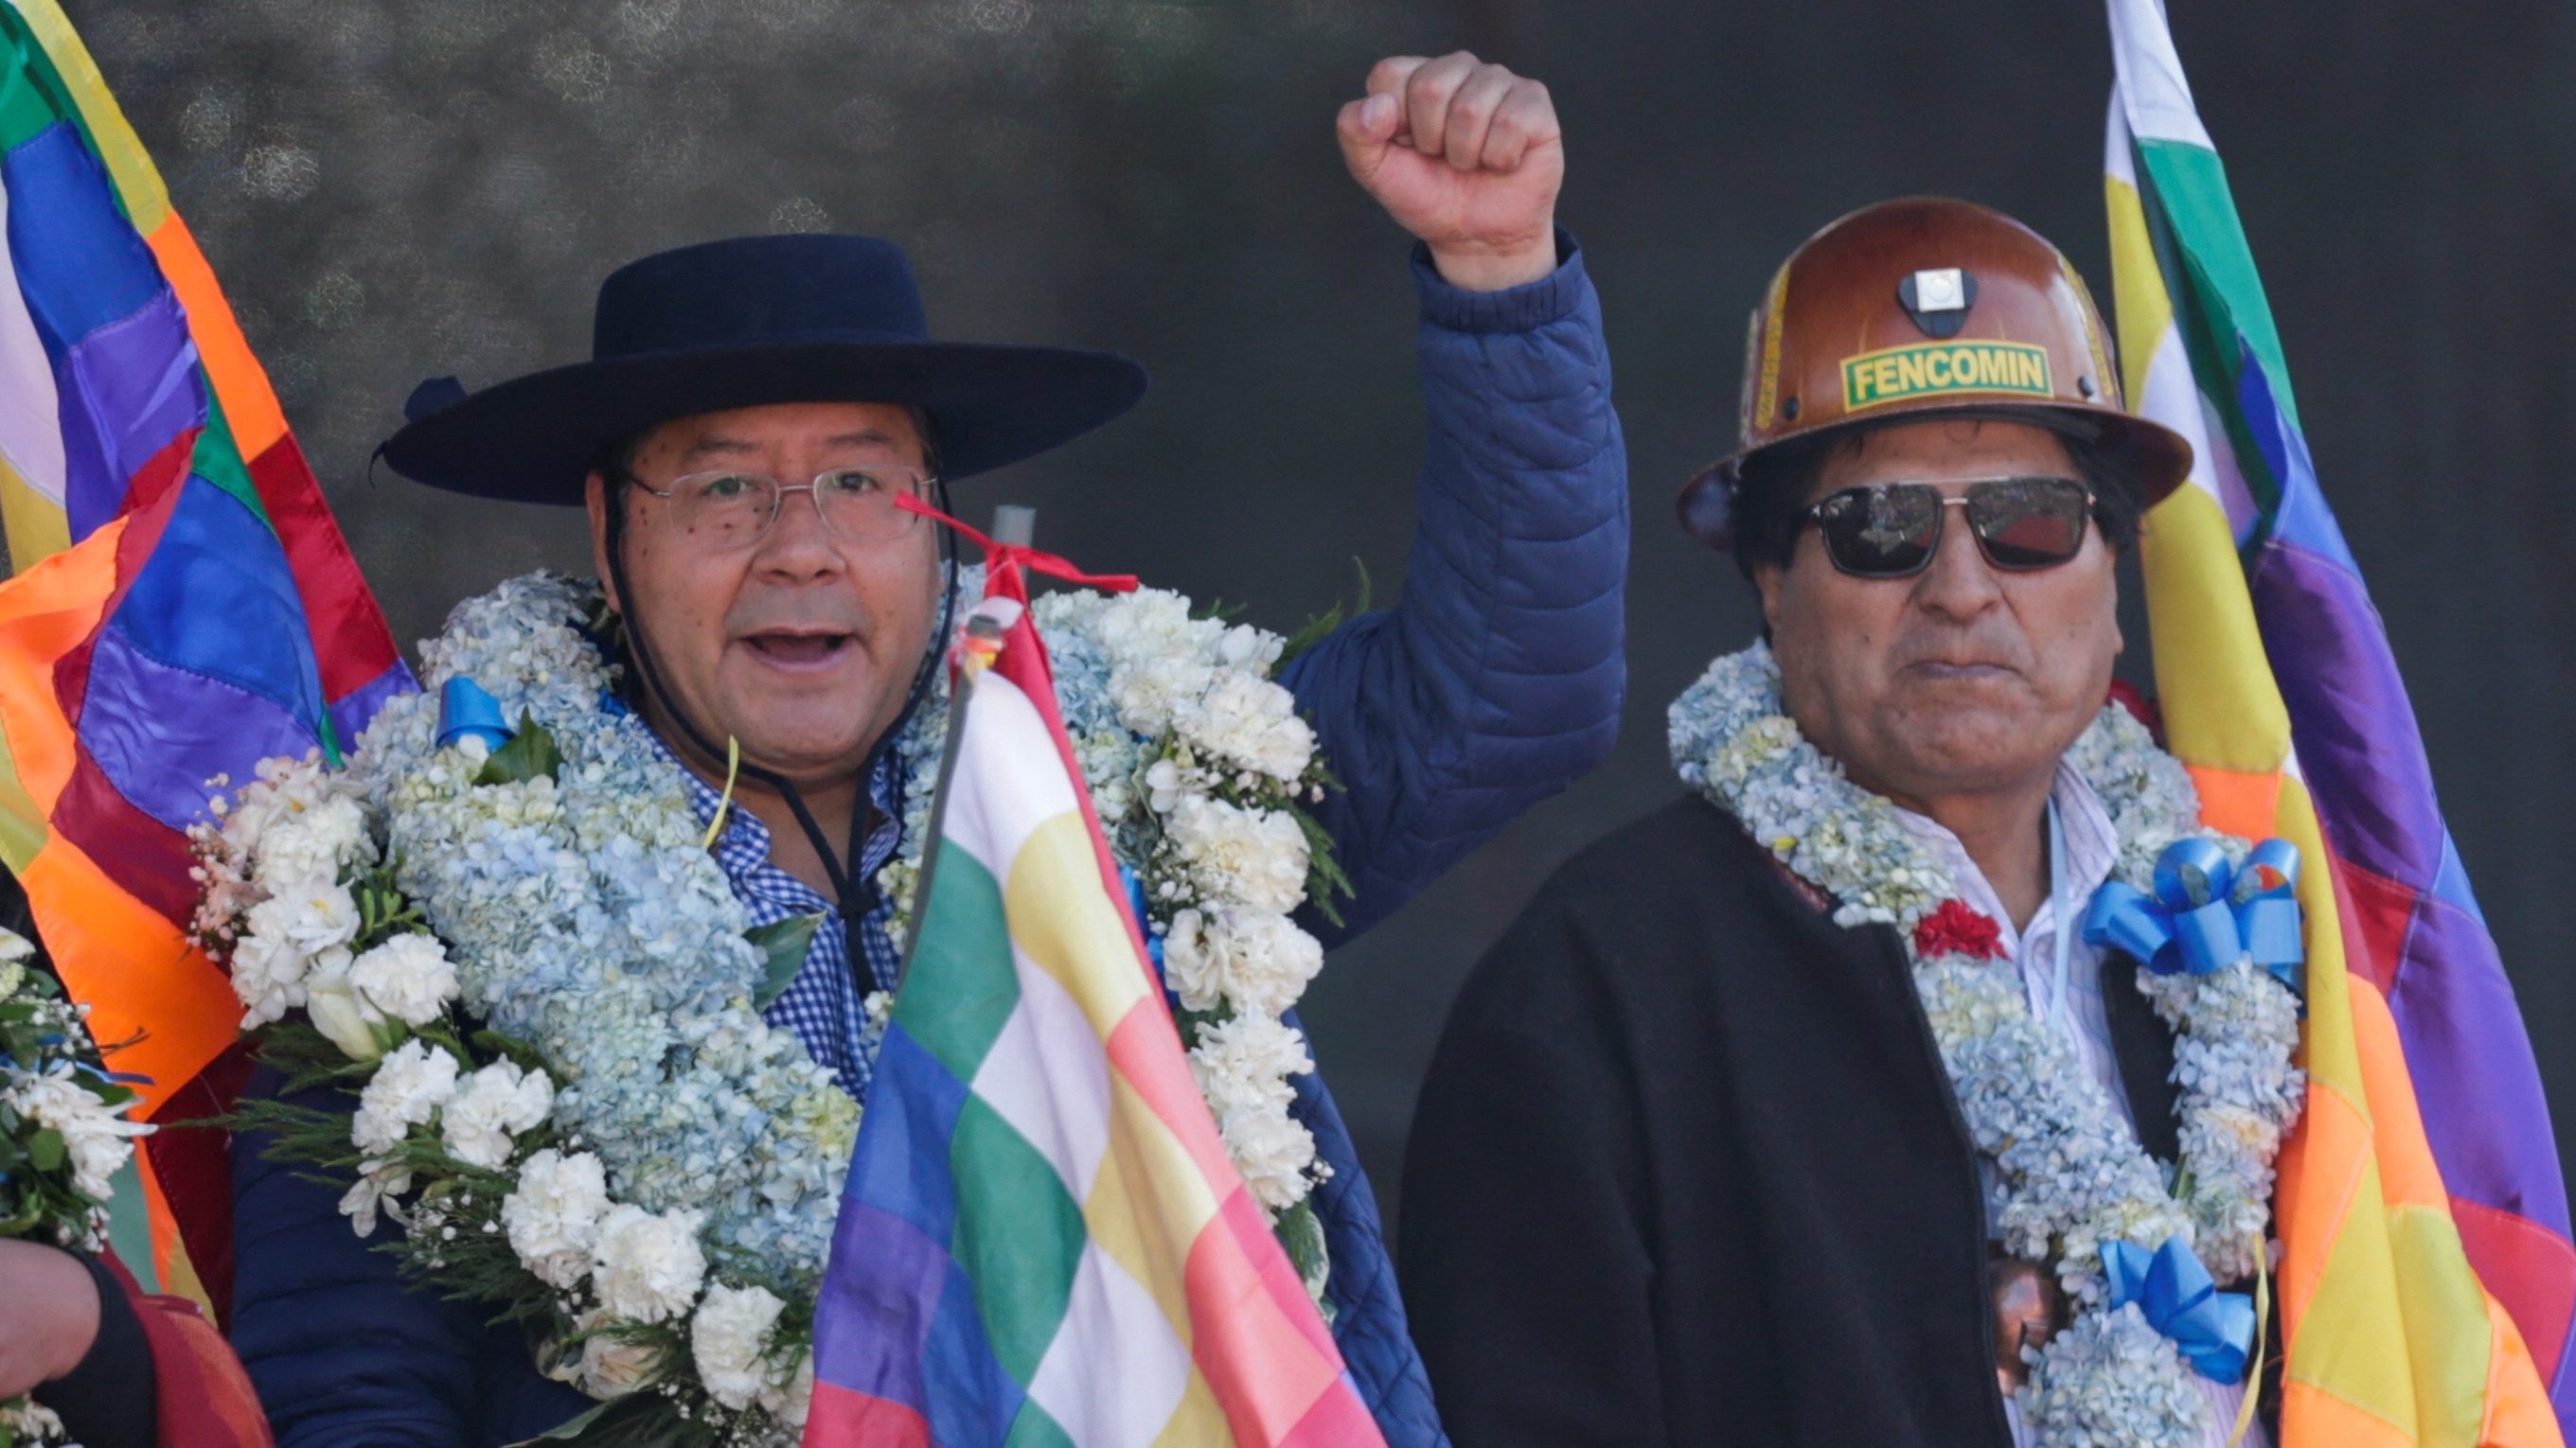 El presidente de Bolivia, Luis Arce Catacora, hace un gesto junto al vicepresidente David Choquehuanca y al expresidente Evo Morales mientras marchan con simpatizantes del partido boliviano MAS, trabajadores y cocaleros para expresar su apoyo al gobierno de Arce, en La Paz, Bolivia, el 25 de agosto de 2022 R(EUTERS/Manuel Claure)